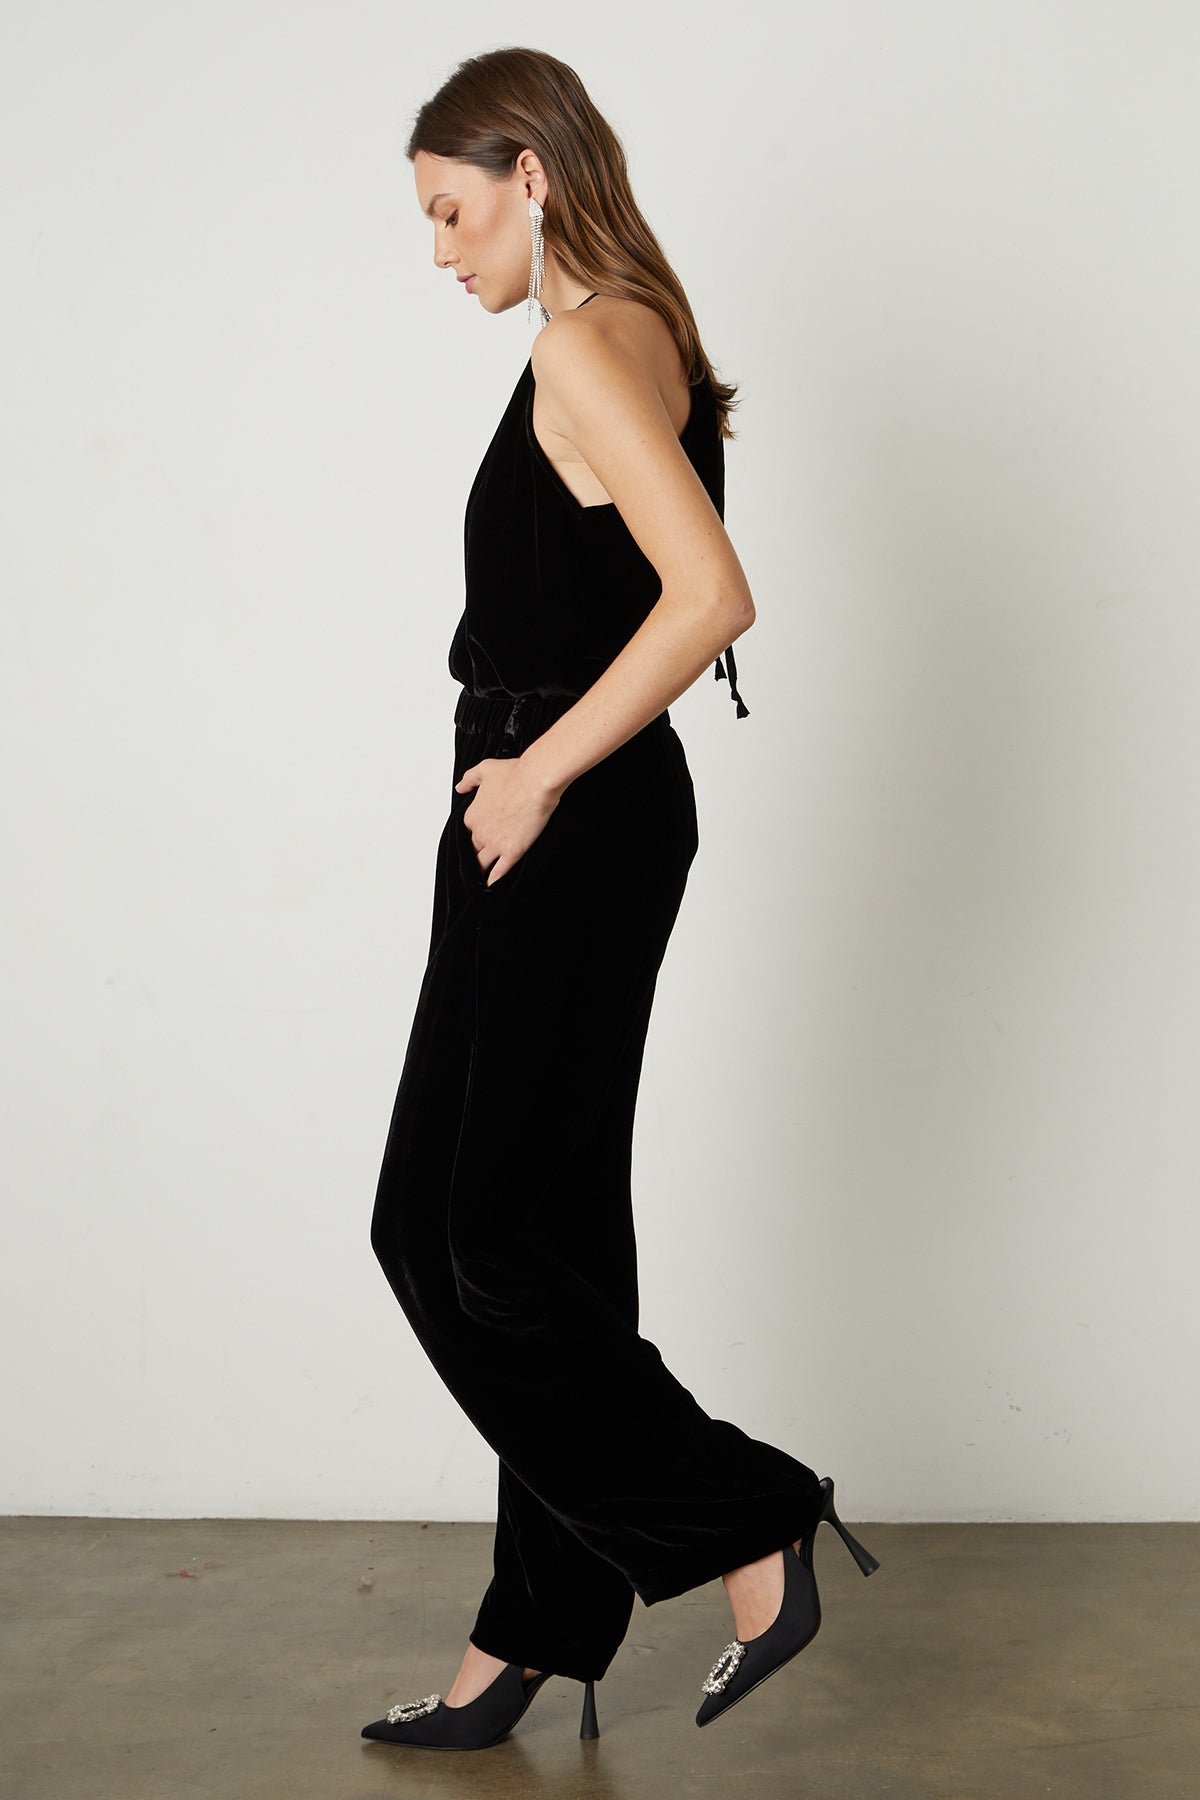 Aleaha Silk Velvet Halter Top in black with Frida pant full length side-25548536971457